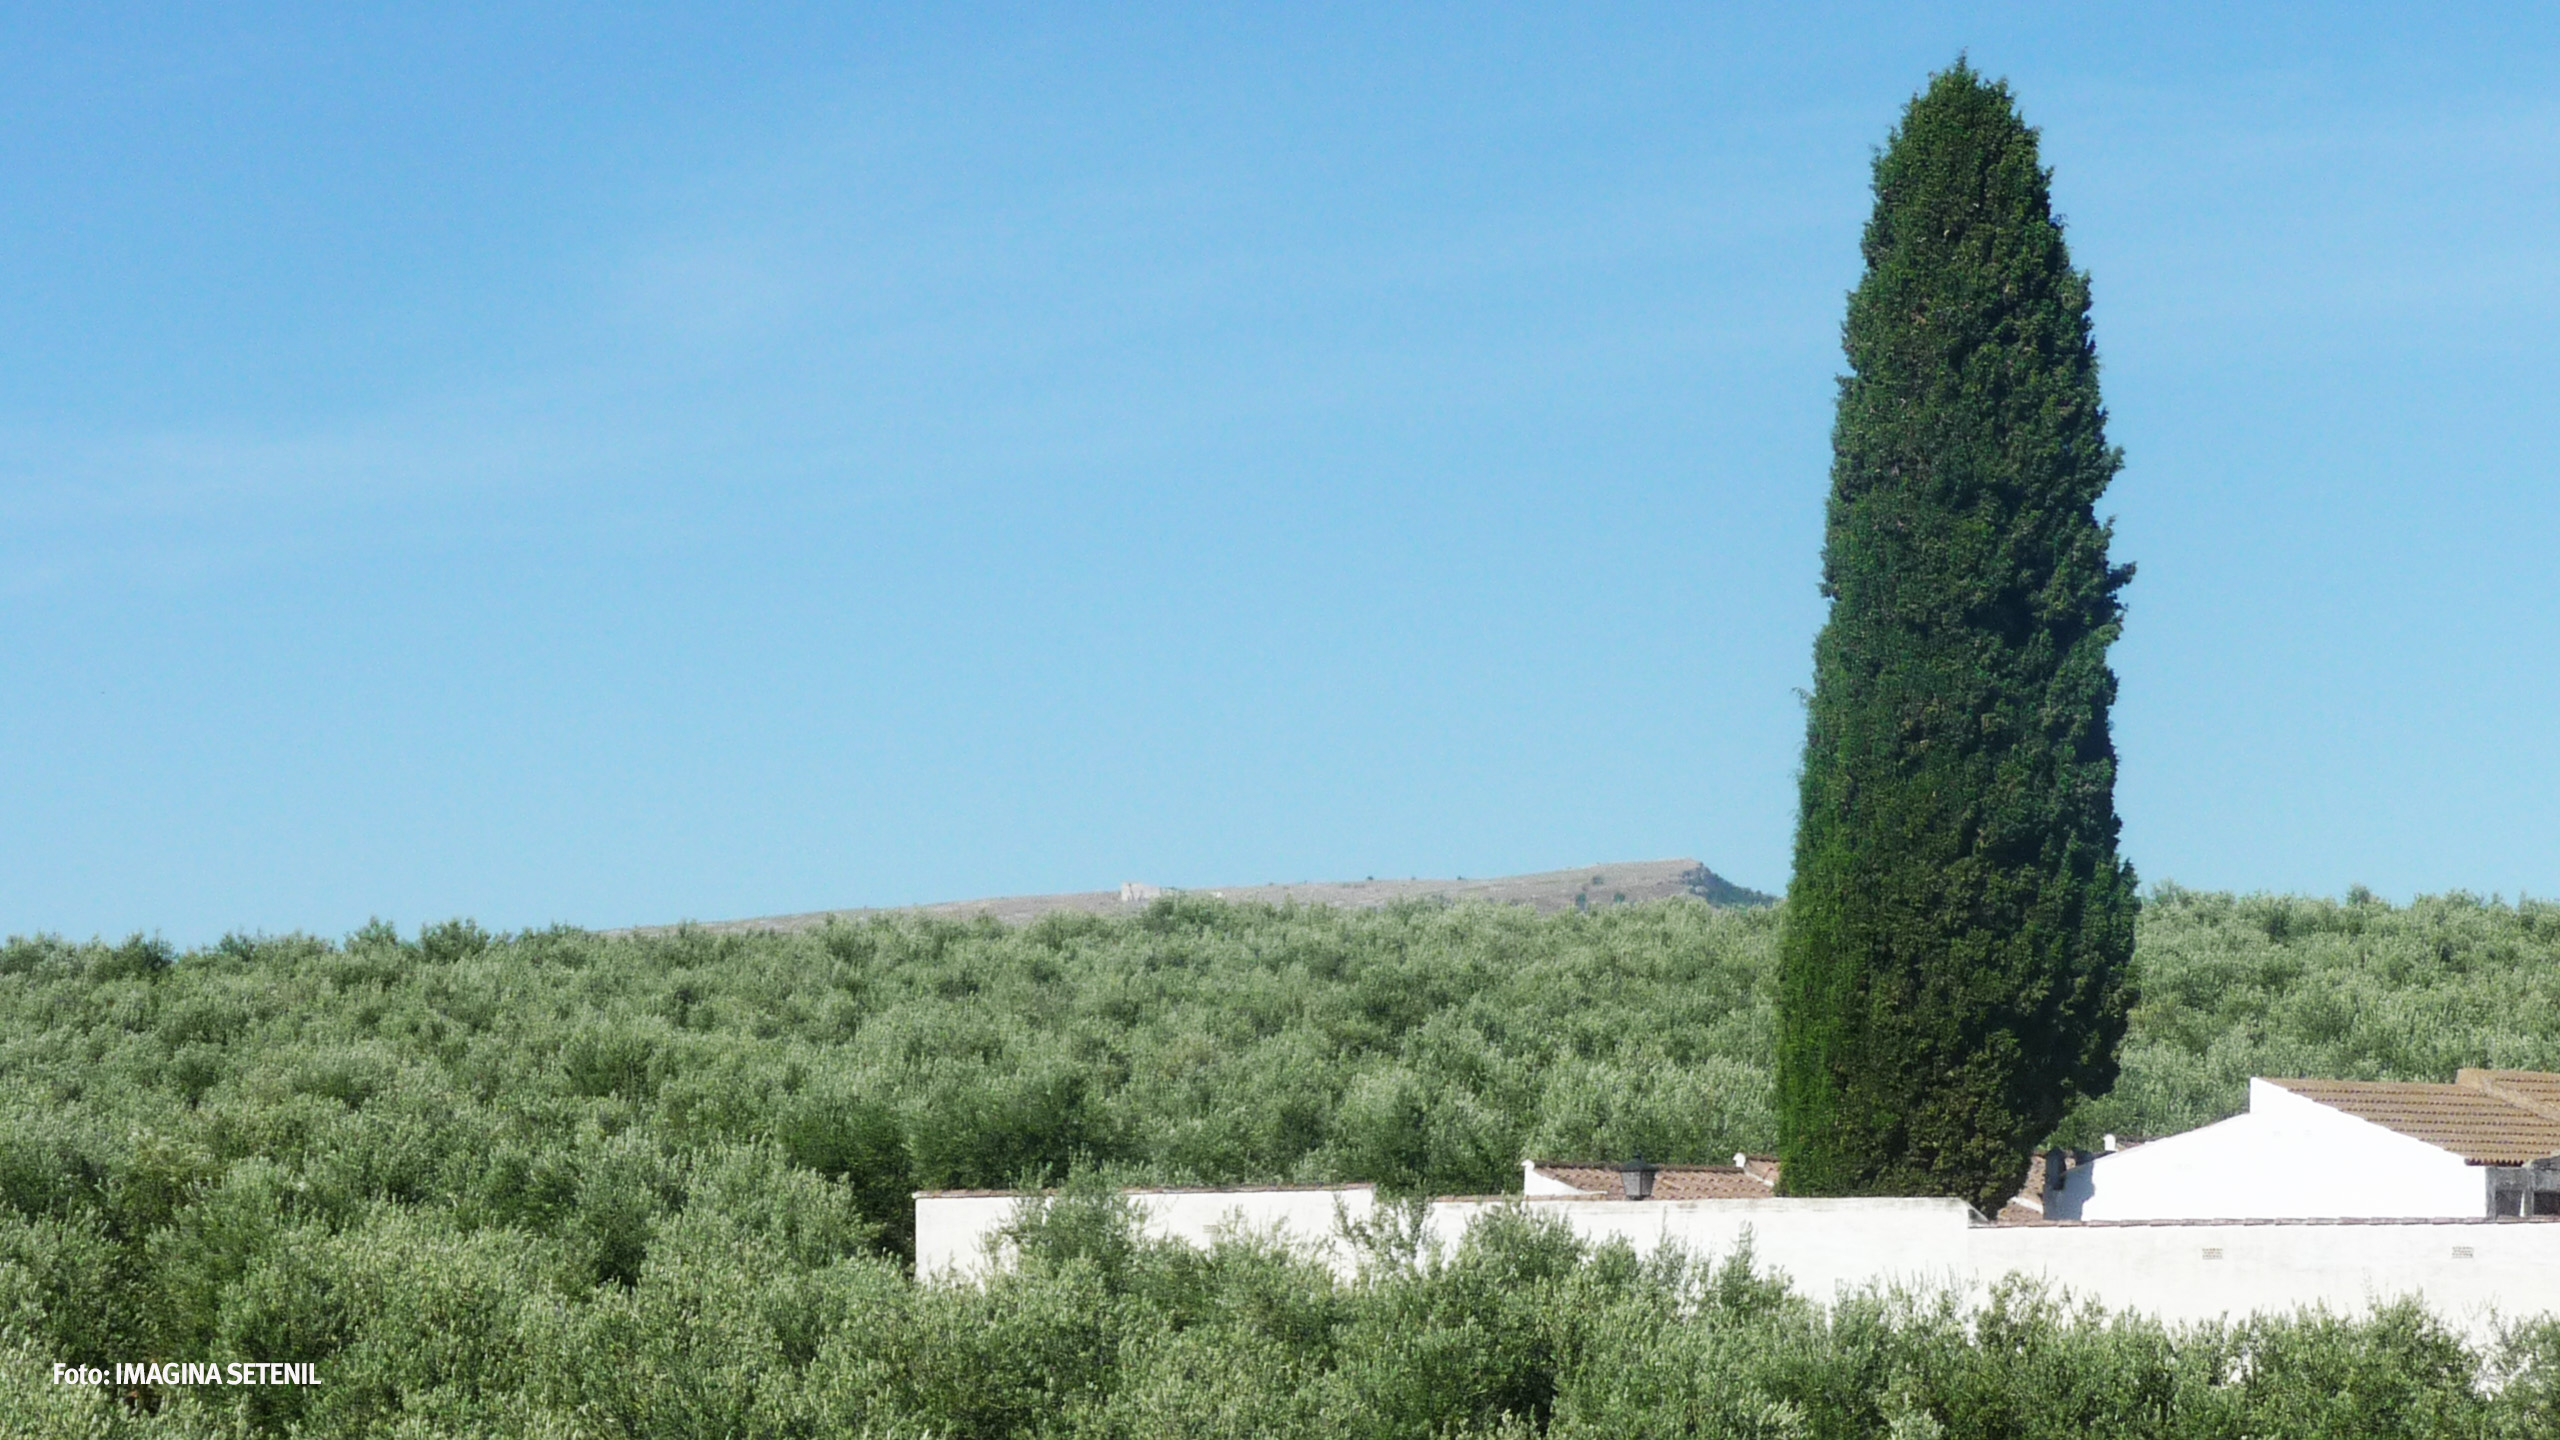 Desde el tejado de la ermita de San Sebastián se divisa Acinipo, tras una maravilloso mar de olivos.